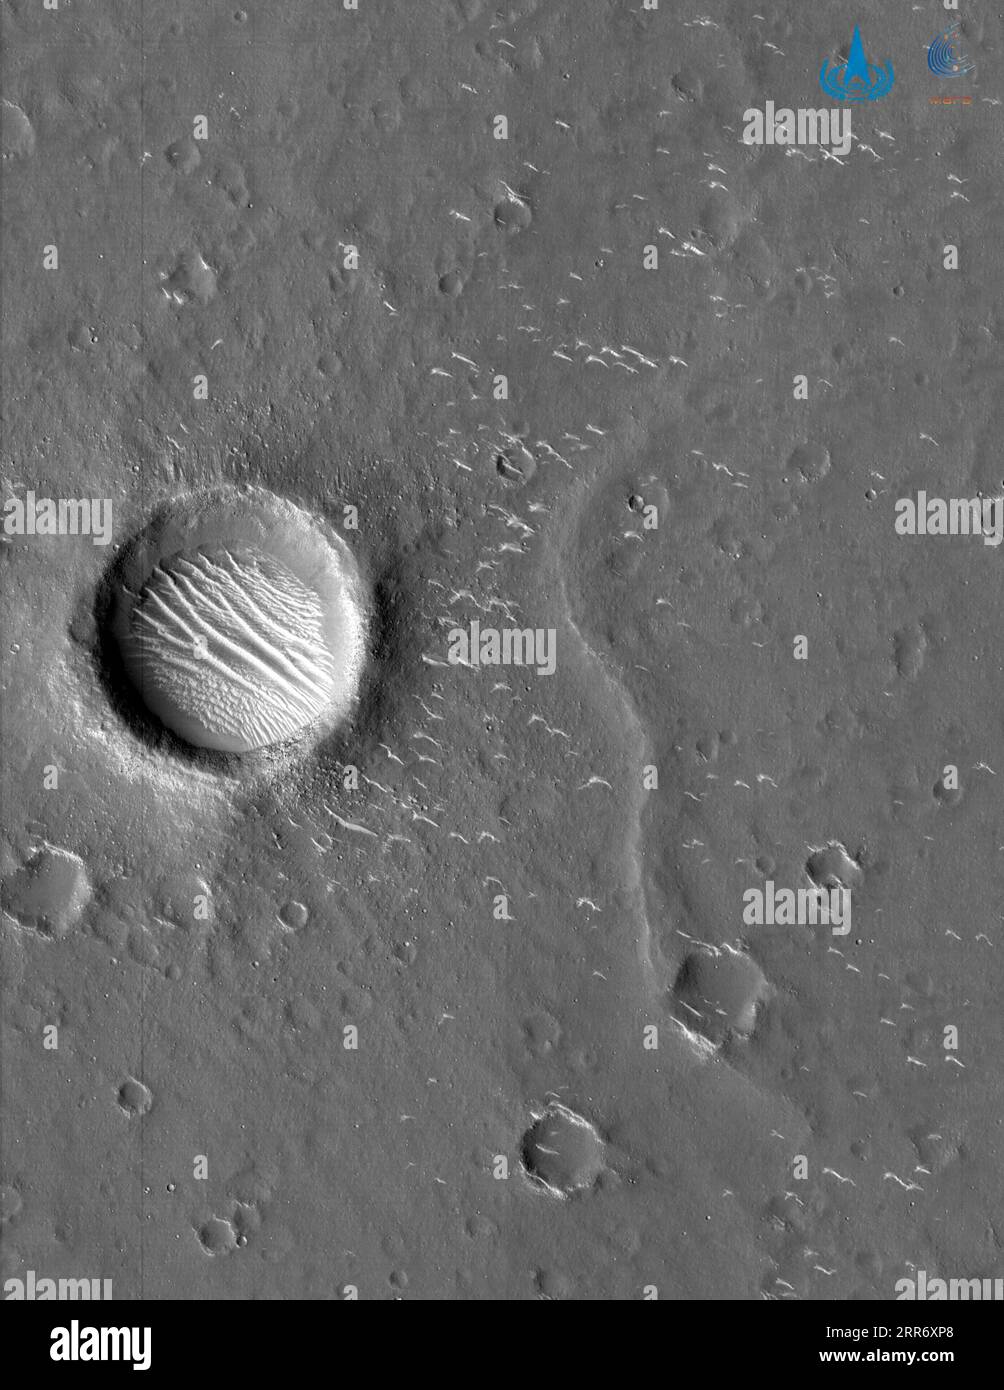 210304 -- PEKING, 4. März 2021 -- Foto veröffentlicht am 4. März 2021 von der China National Space Administration zeigt ein hochauflösendes Bild des Mars, das von der Sonde Tianwen-1 des Landes aufgenommen wurde. Die China National Space Administration veröffentlichte am Donnerstag hochauflösende Bilder des Mars, die von der Sonde Tianwen-1 des Landes aufgenommen wurden. Diese Bilder umfassen zwei panchromatische Bilder und ein Farbbild, so die . /Handout über Xinhua EyesonSci CHINA-BEIJING-TIANWEN-1 PROBE-MARS-HOCHAUFLÖSENDE IMAGESCN CNSA PUBLICATIONxNOTxINxCHN Stockfoto